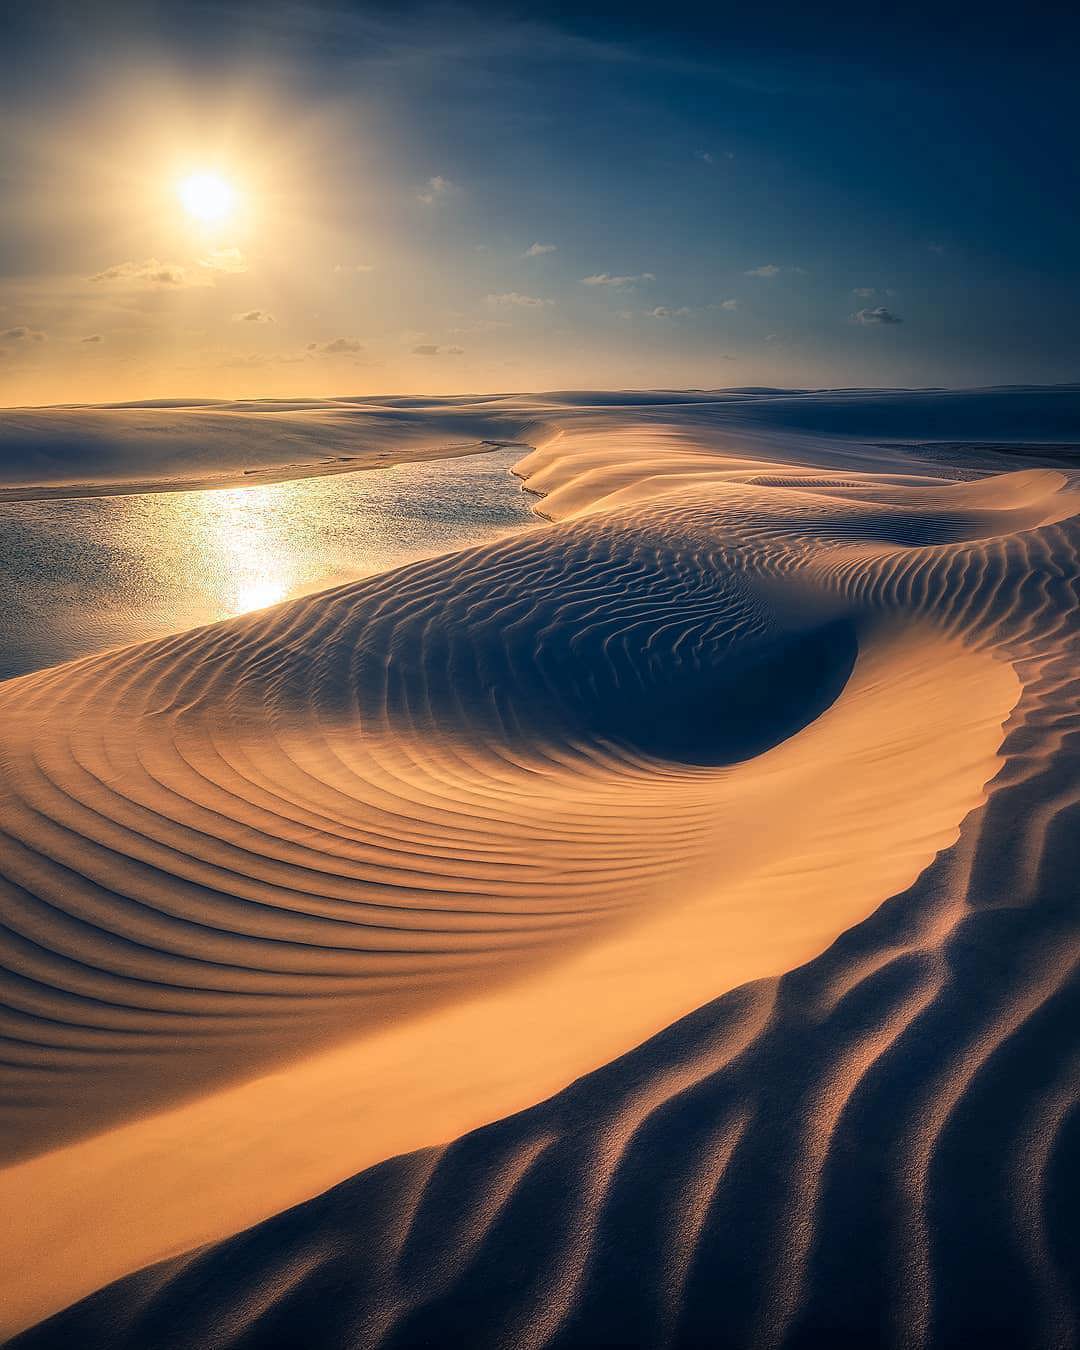 Sunset over the desert dunes - Lençóis Maranhenses